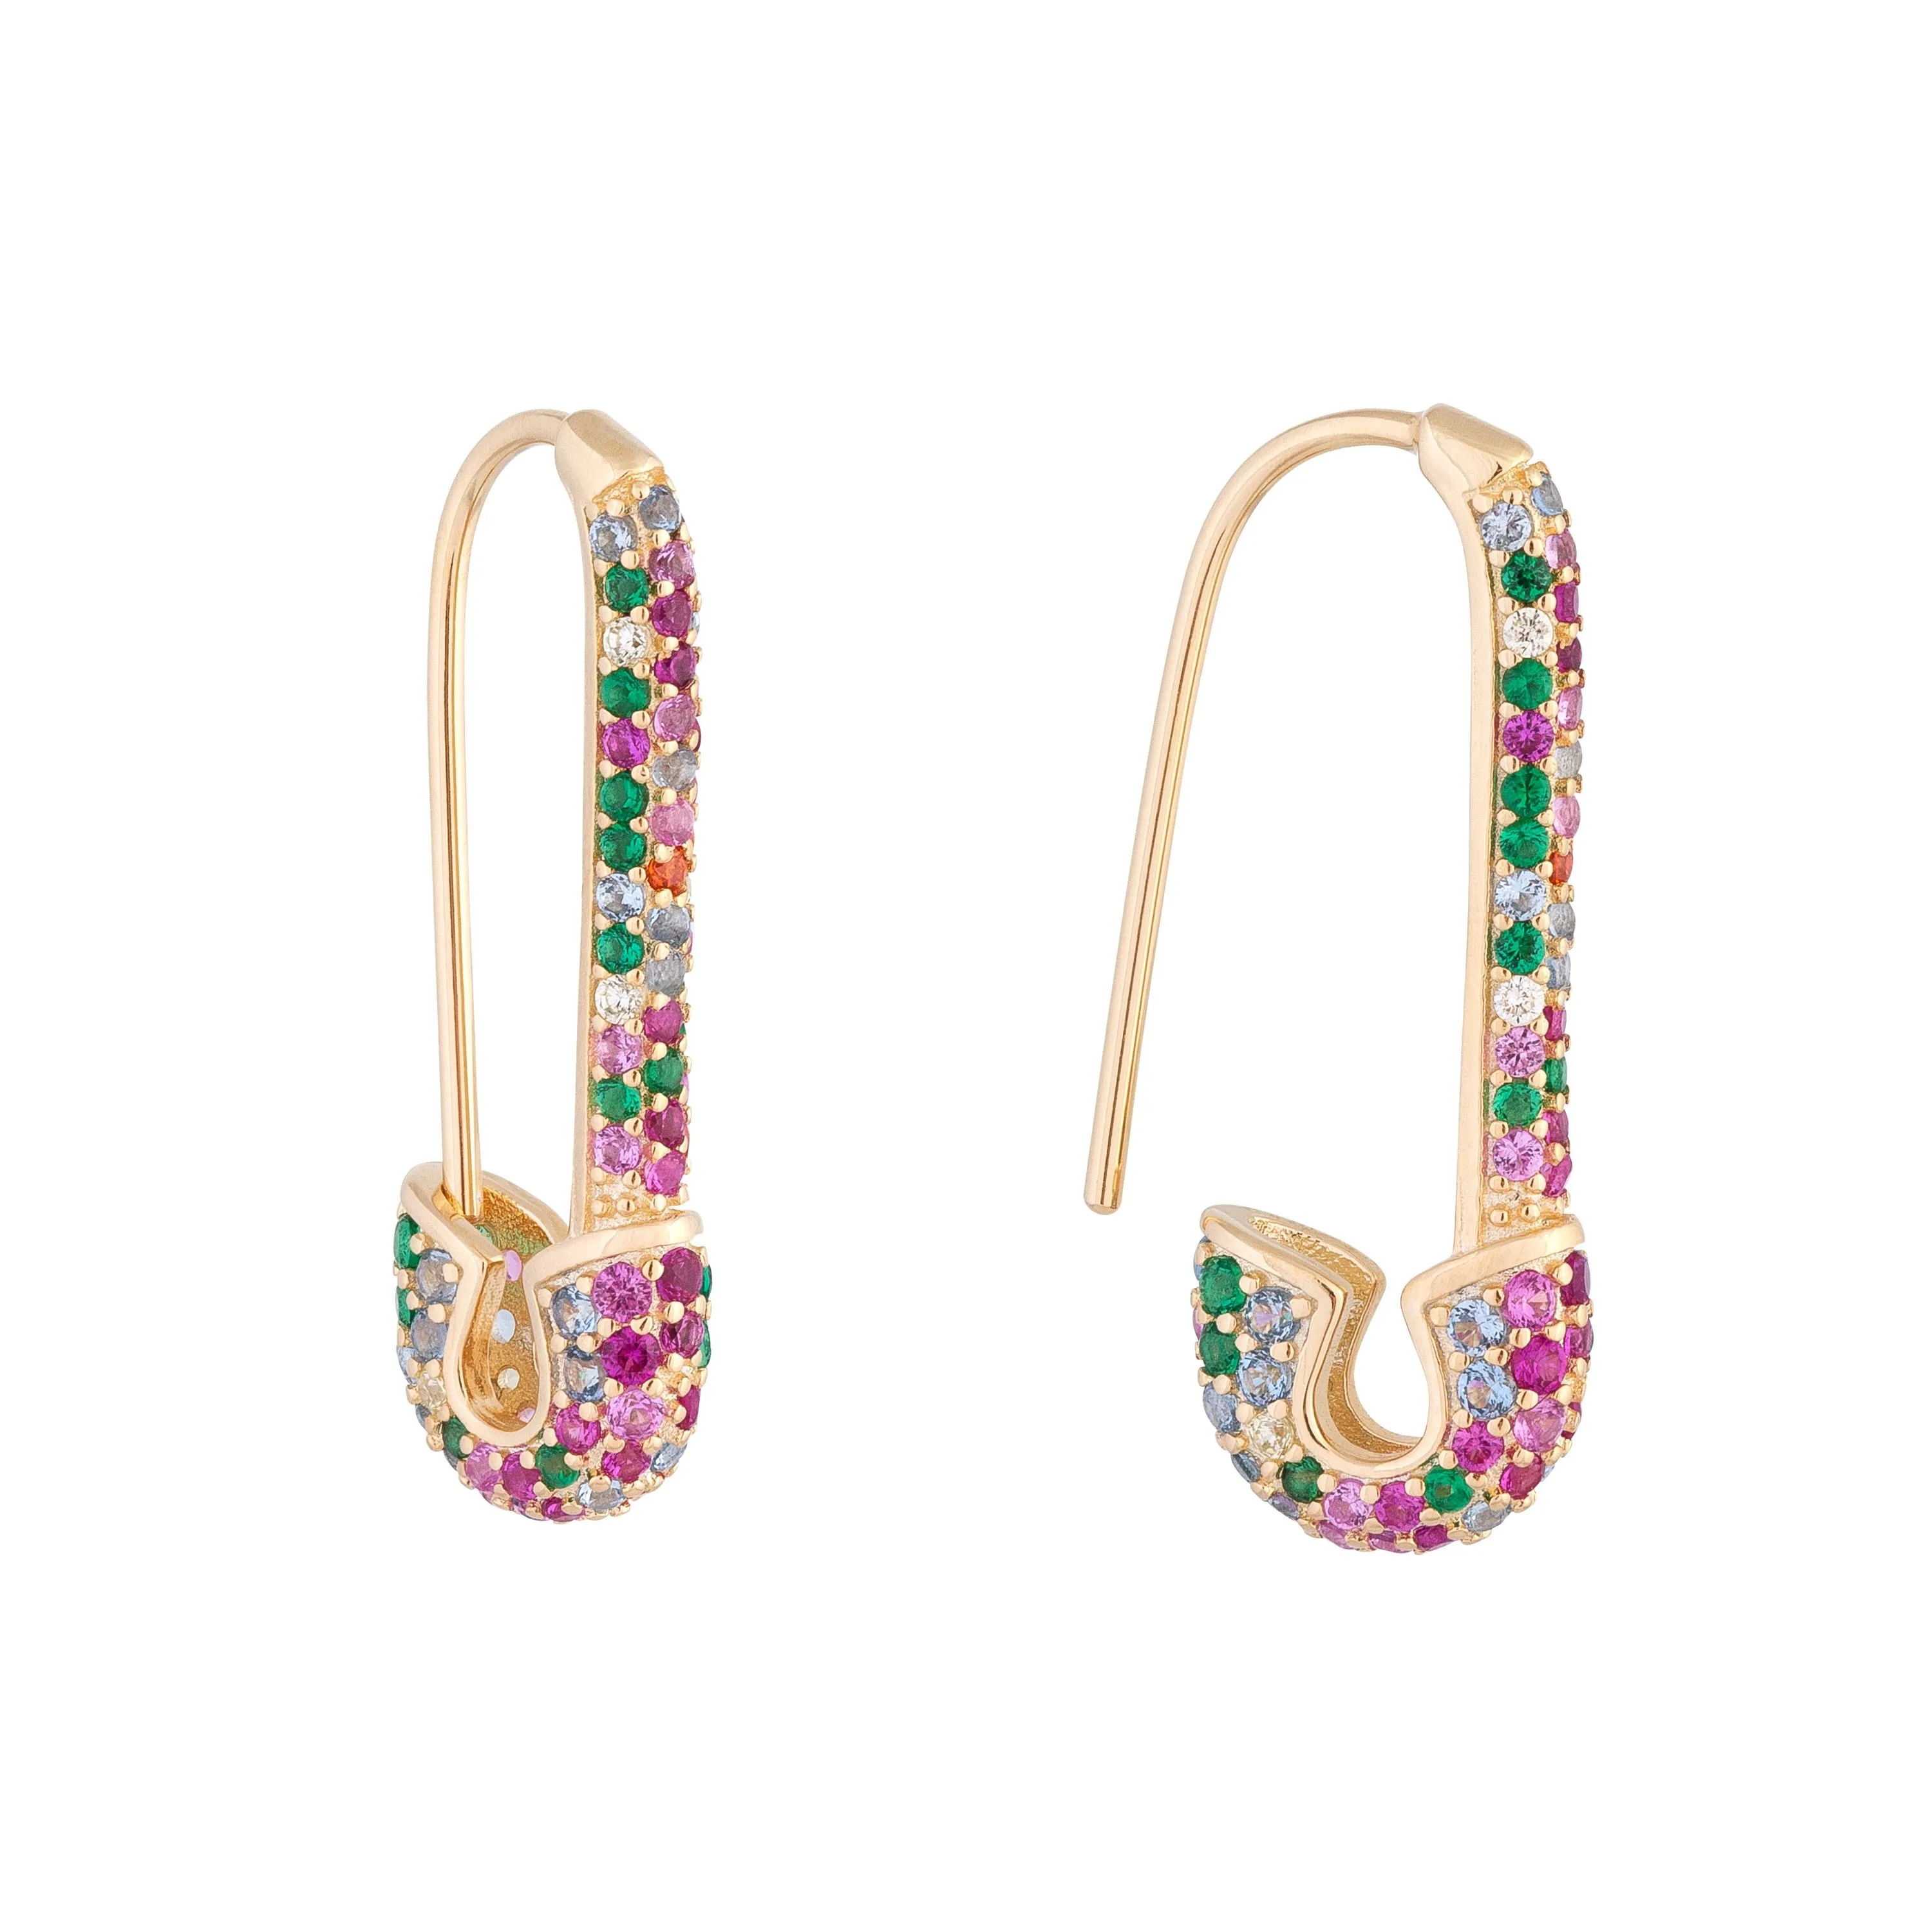 Arco-íris moda feminina brinco de argola mais recente novo design segurança pino forma orelha fio banhado a ouro na moda lindo feminino jóias265i